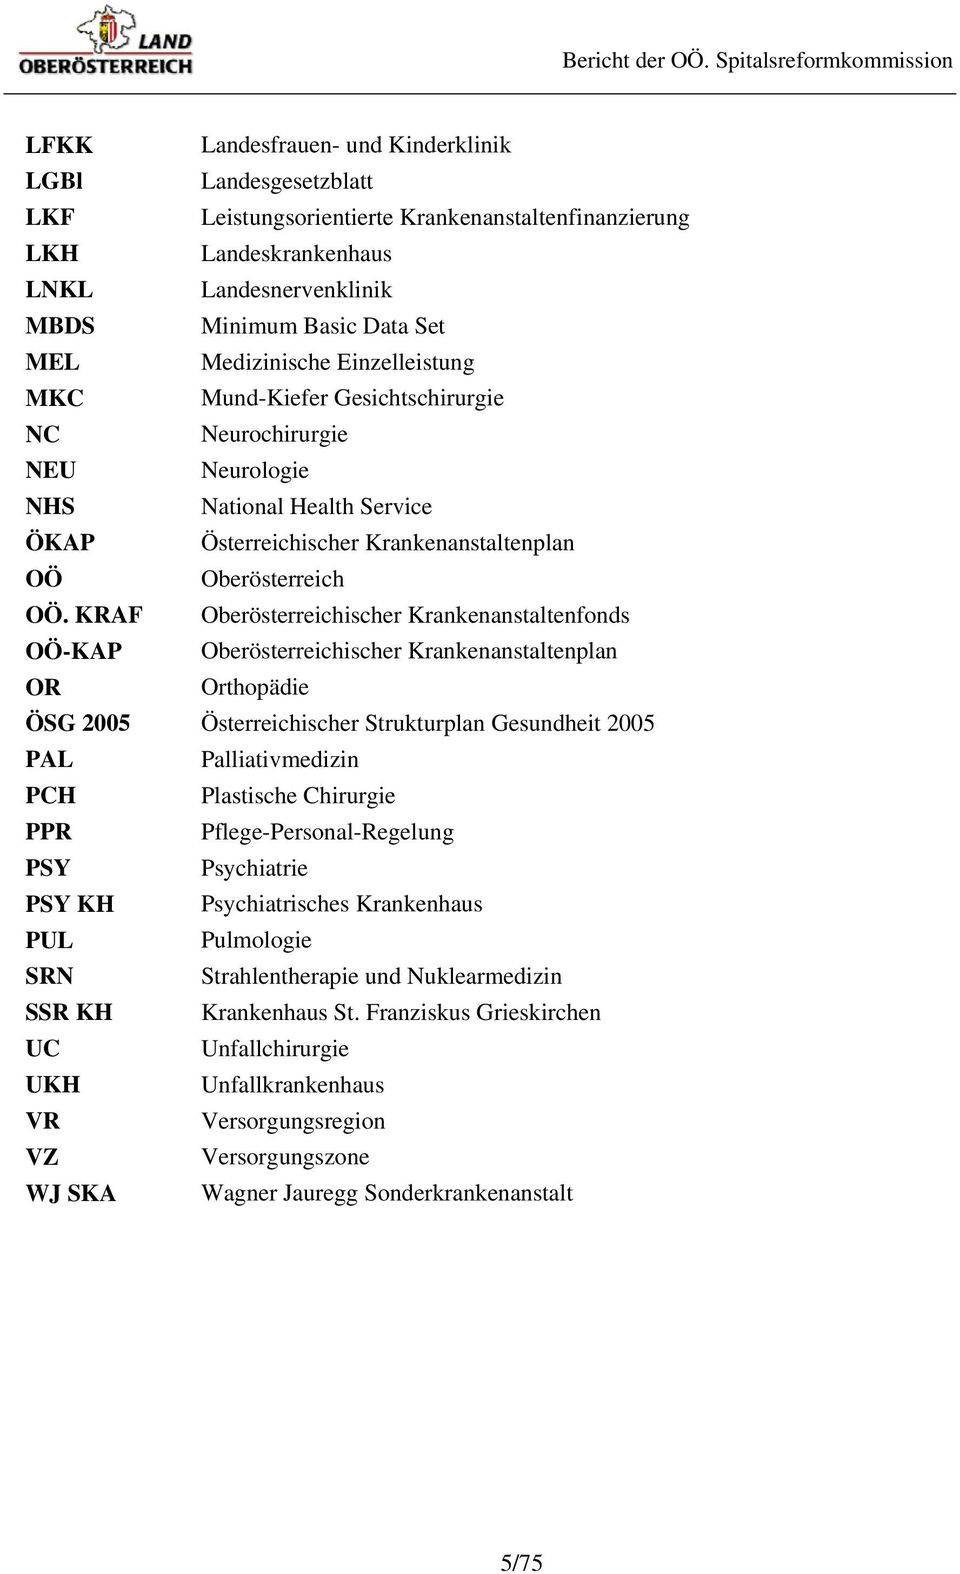 KRAF Oberösterreichischer Krankenanstaltenfonds OÖ-KAP Oberösterreichischer Krankenanstaltenplan OR Orthopädie ÖSG 2005 Österreichischer Strukturplan Gesundheit 2005 PAL Palliativmedizin PCH